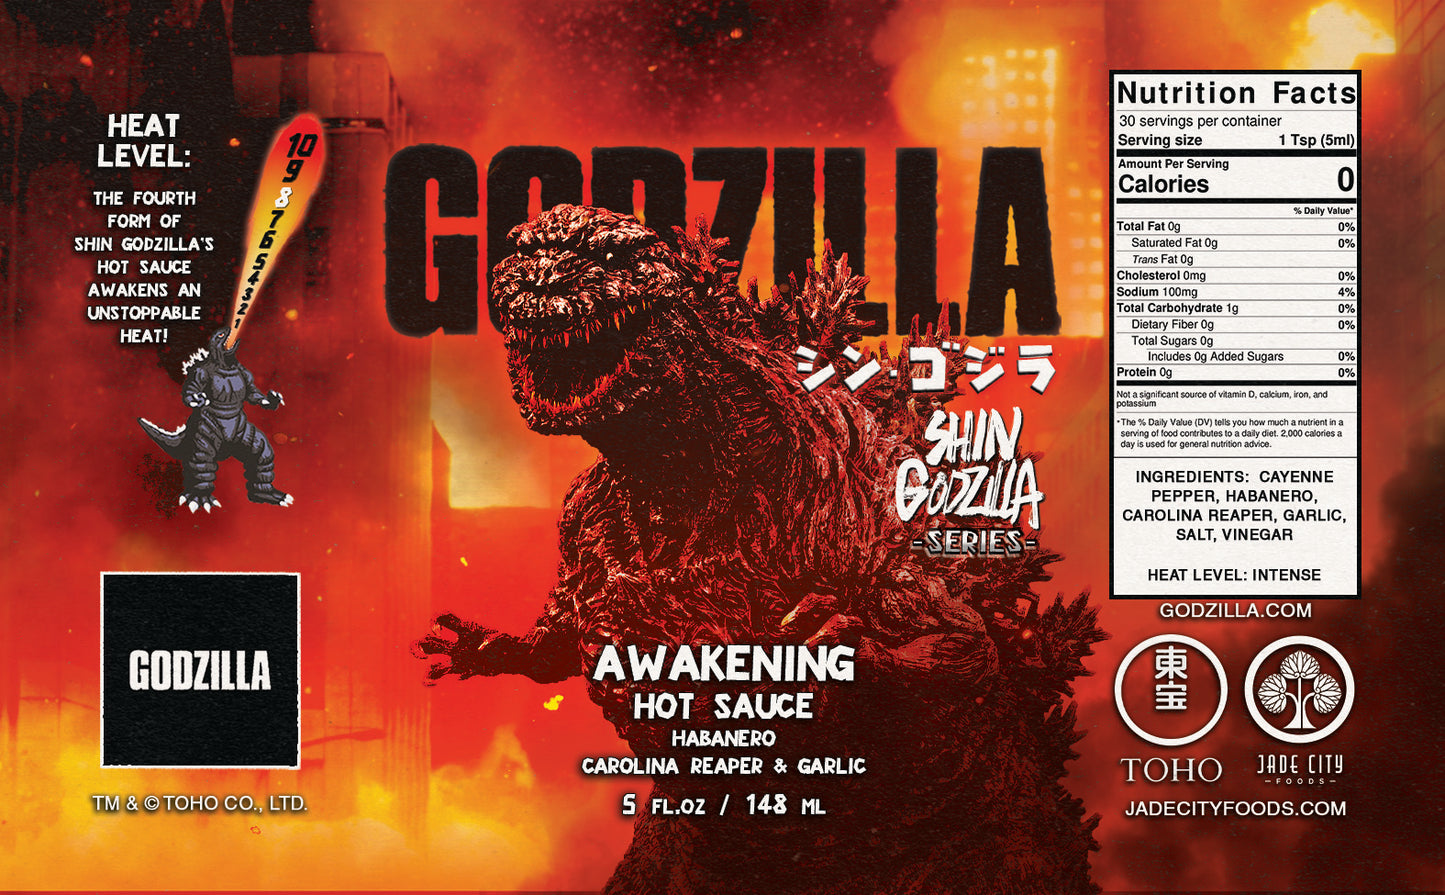 Shin Godzilla's Awakening : Habanero, Carolina Reaper & Garlic Sauce